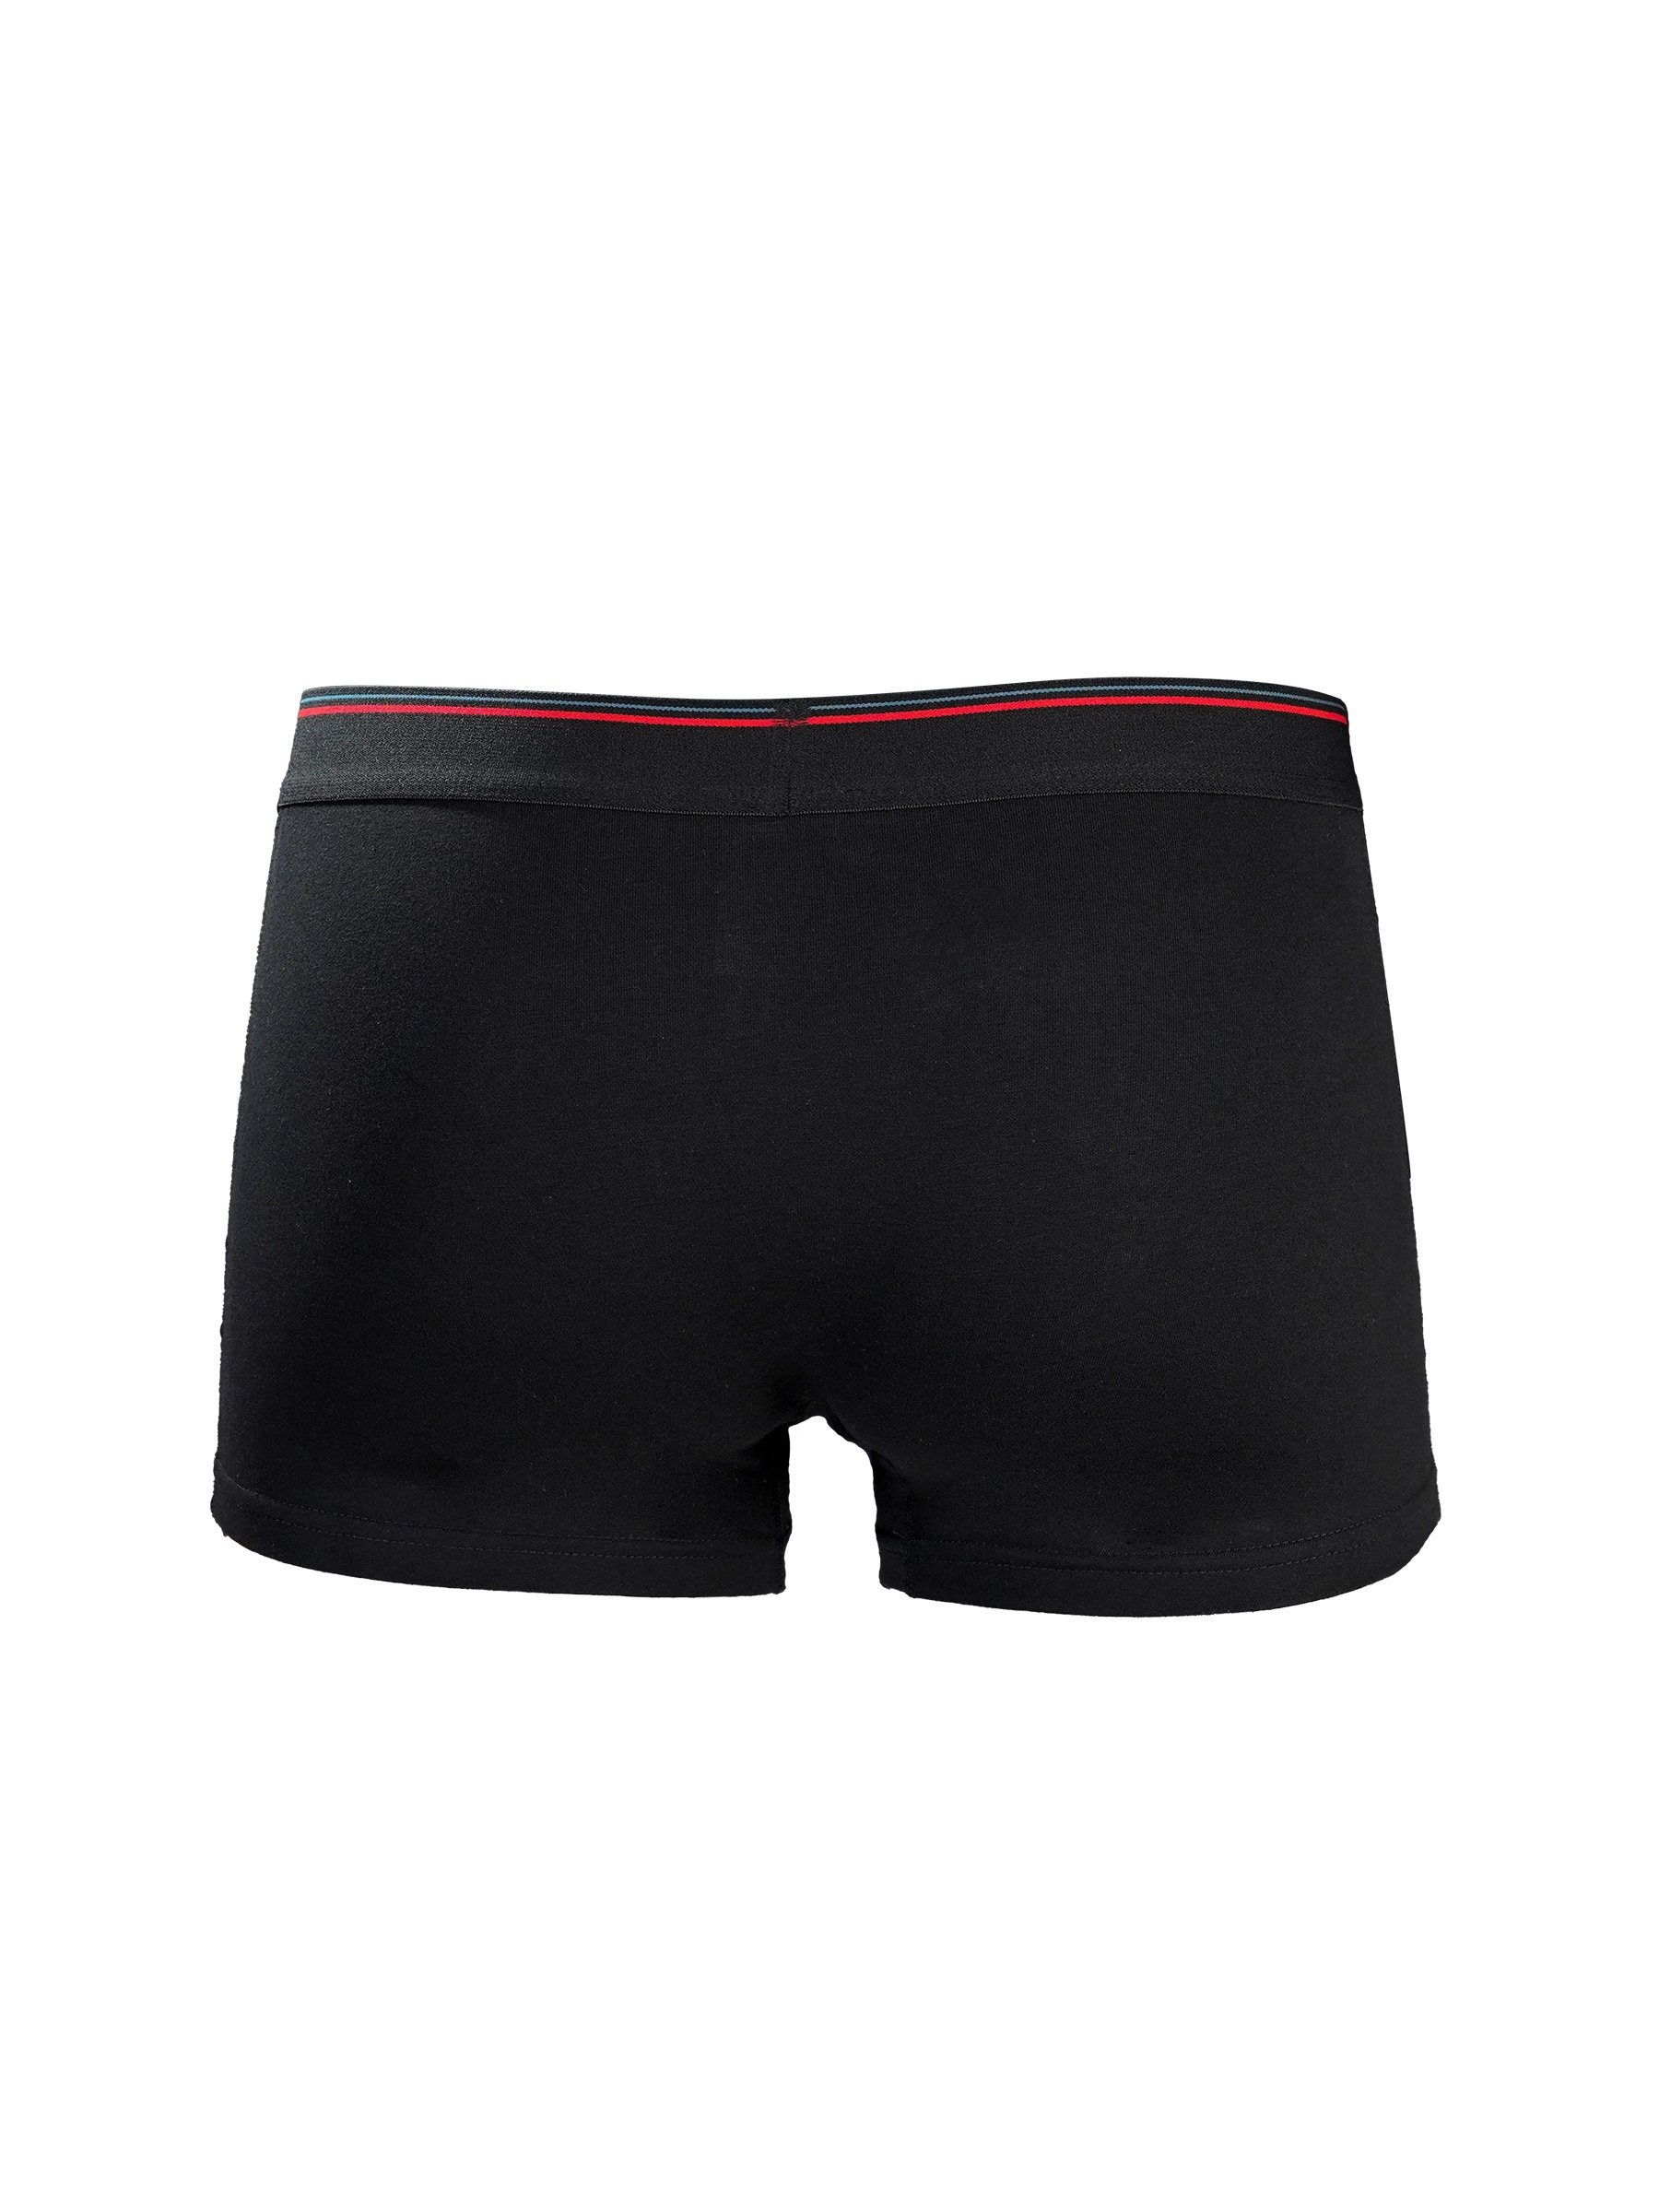 Men's Underwear Comfortable Soft Skin friendly U pouch Boxer